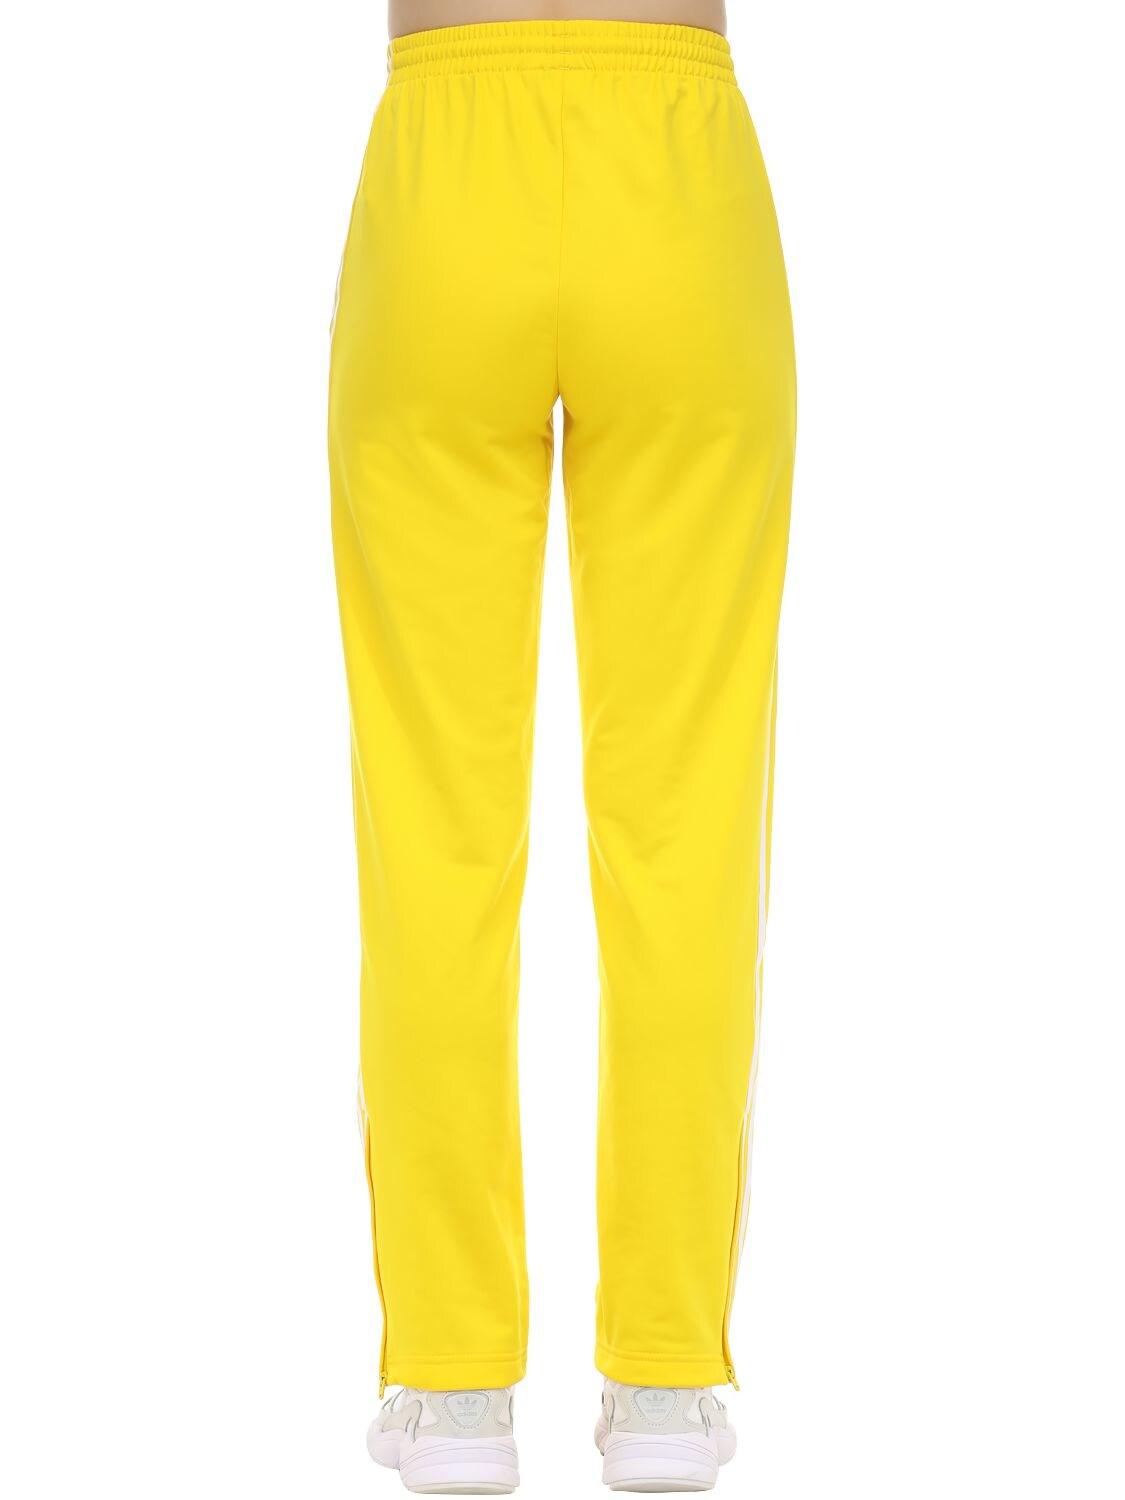 pantalon adidas jaune